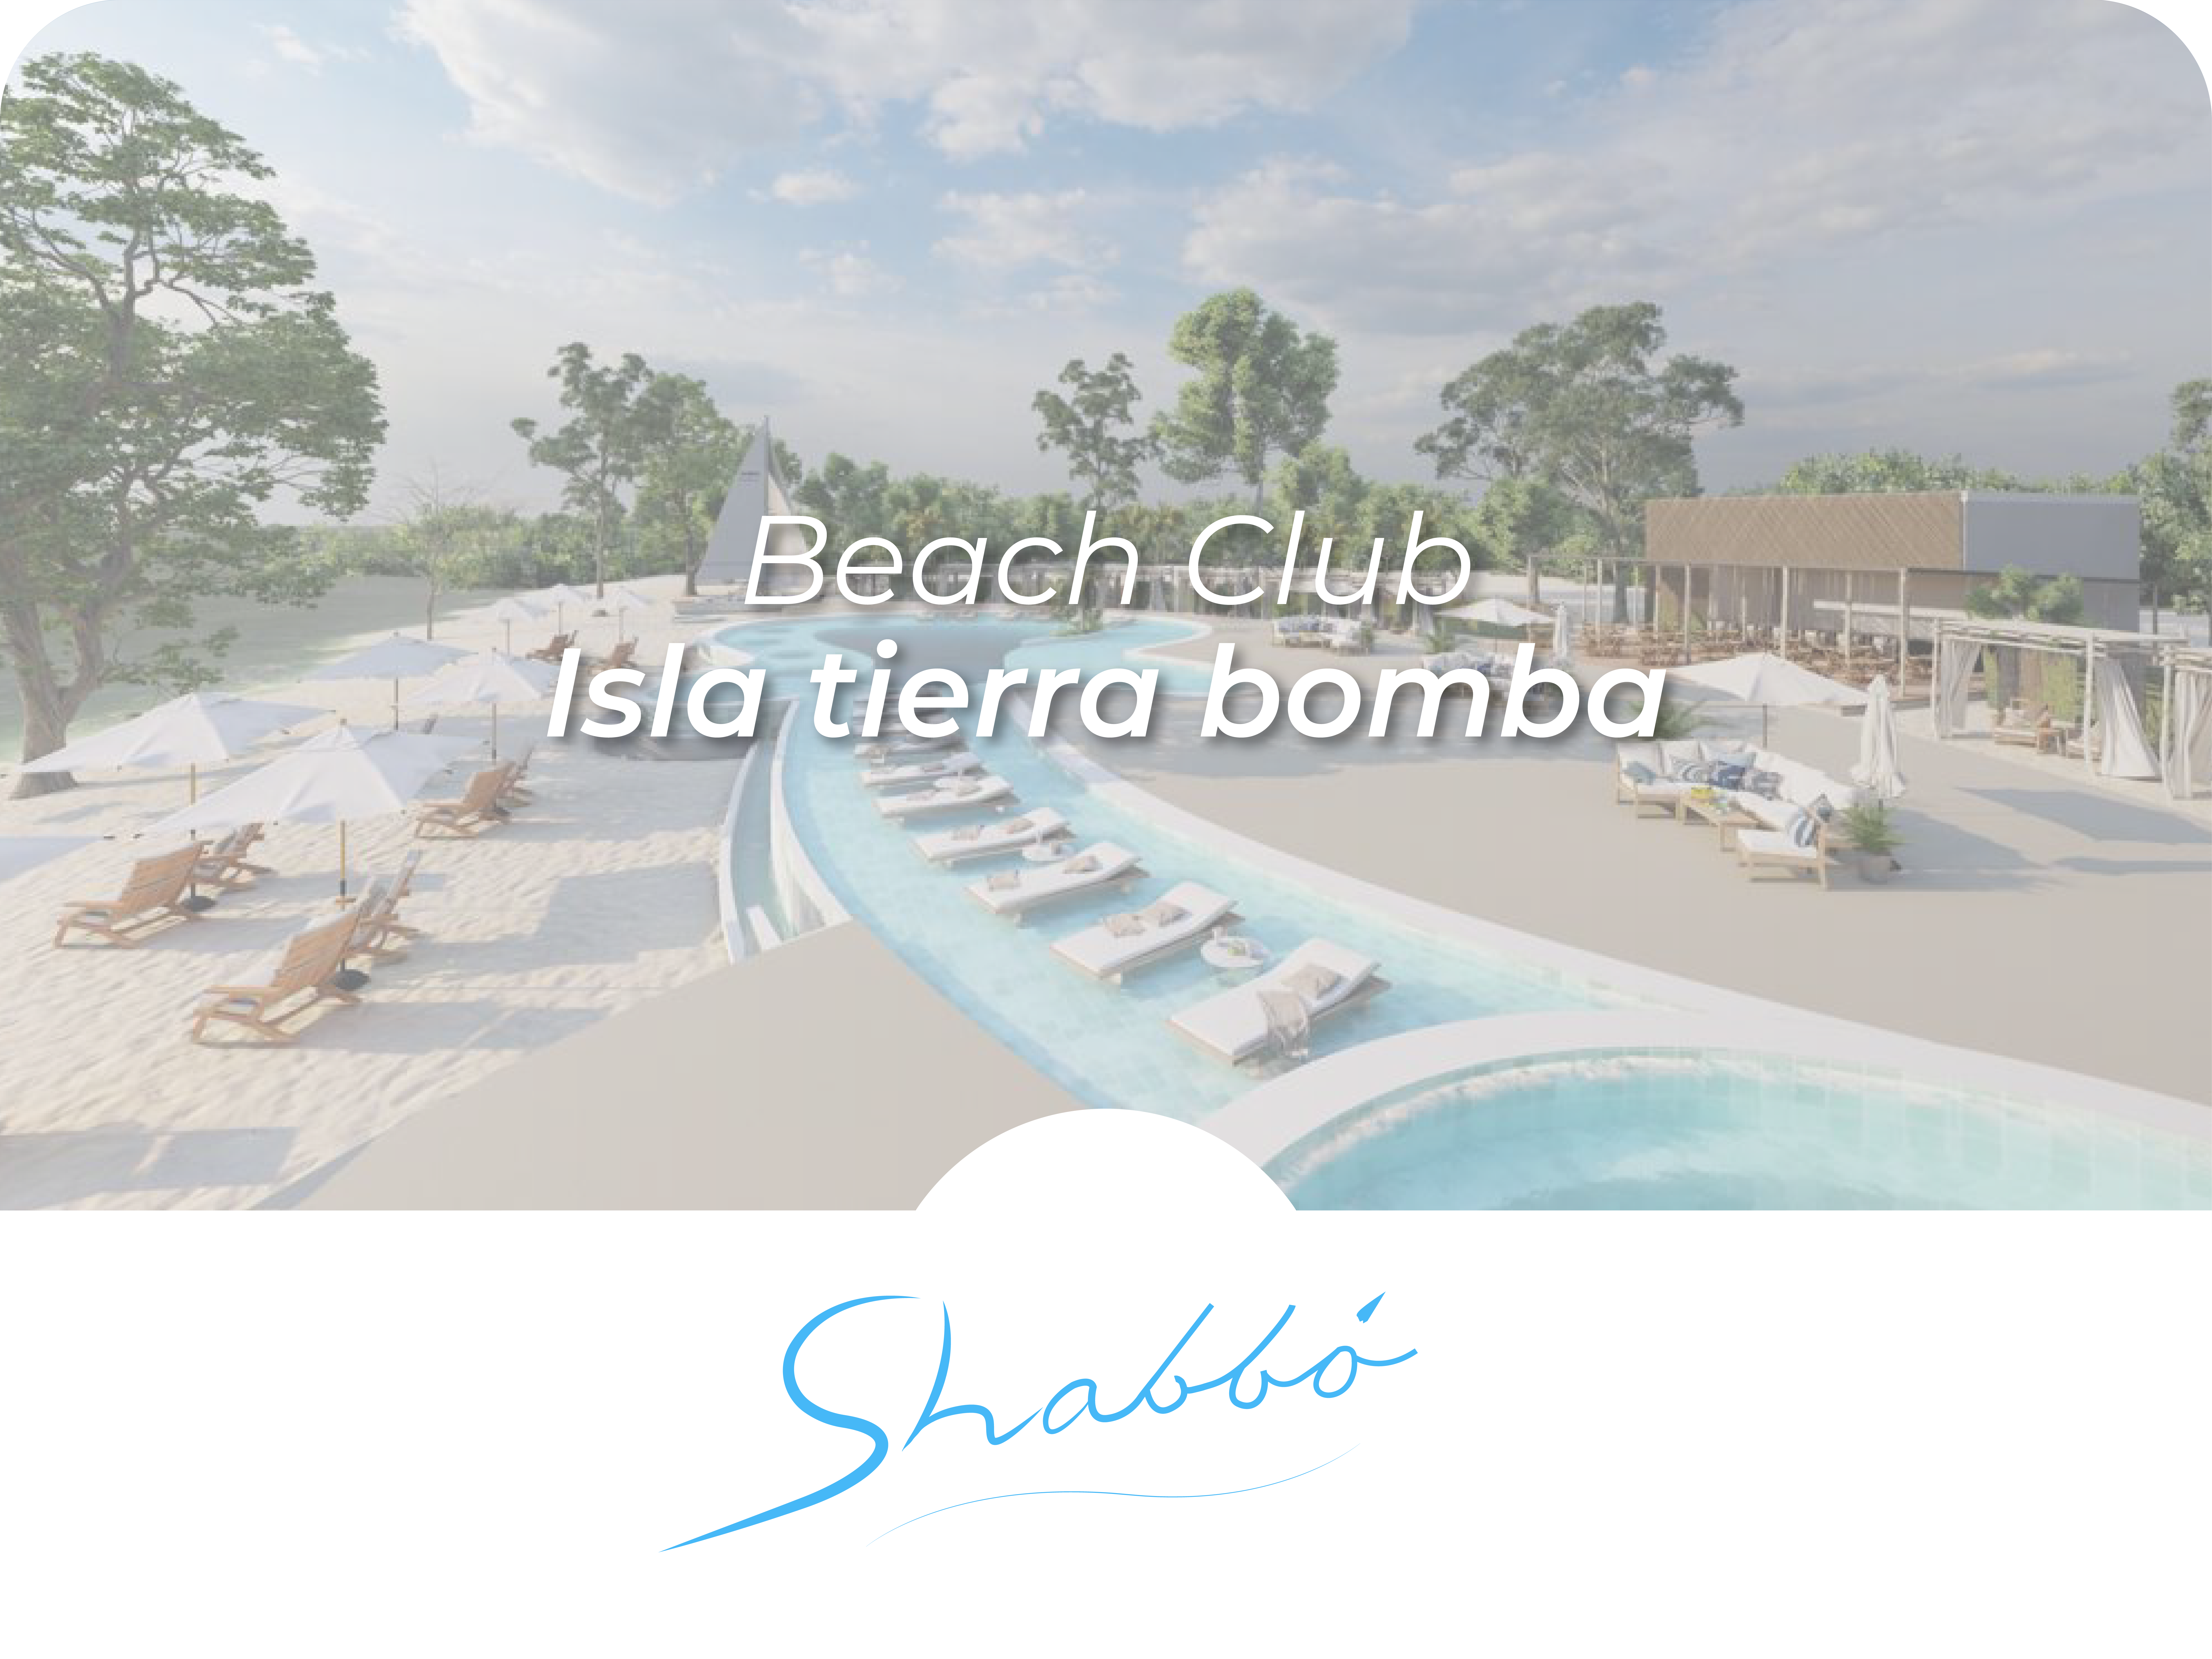 Shabbo Beach